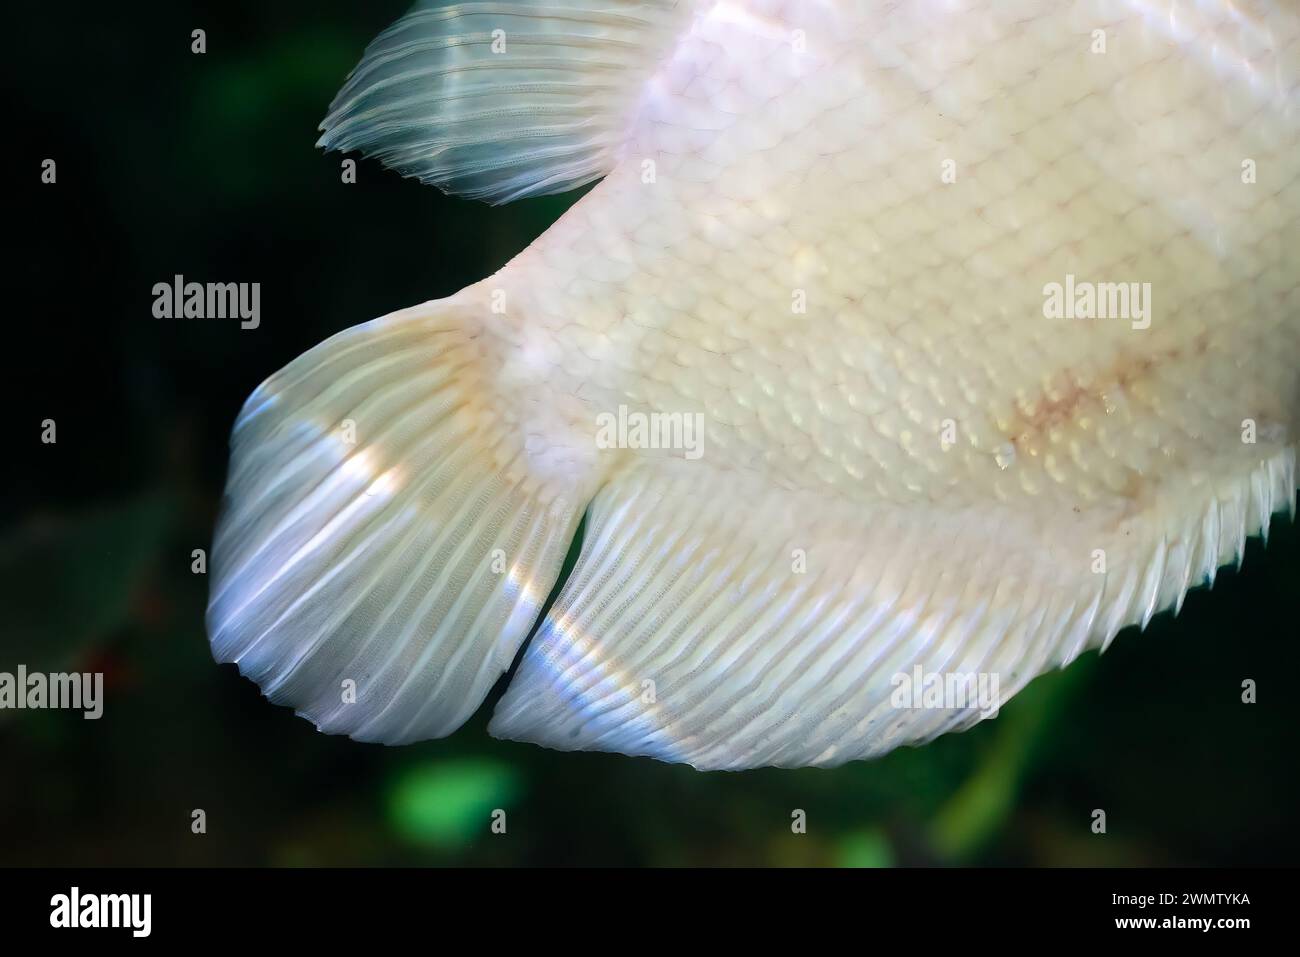 Tale of Albino giant gourami (Osphronemus goramy) fish, large gourami native to Southeast Asia Stock Photo